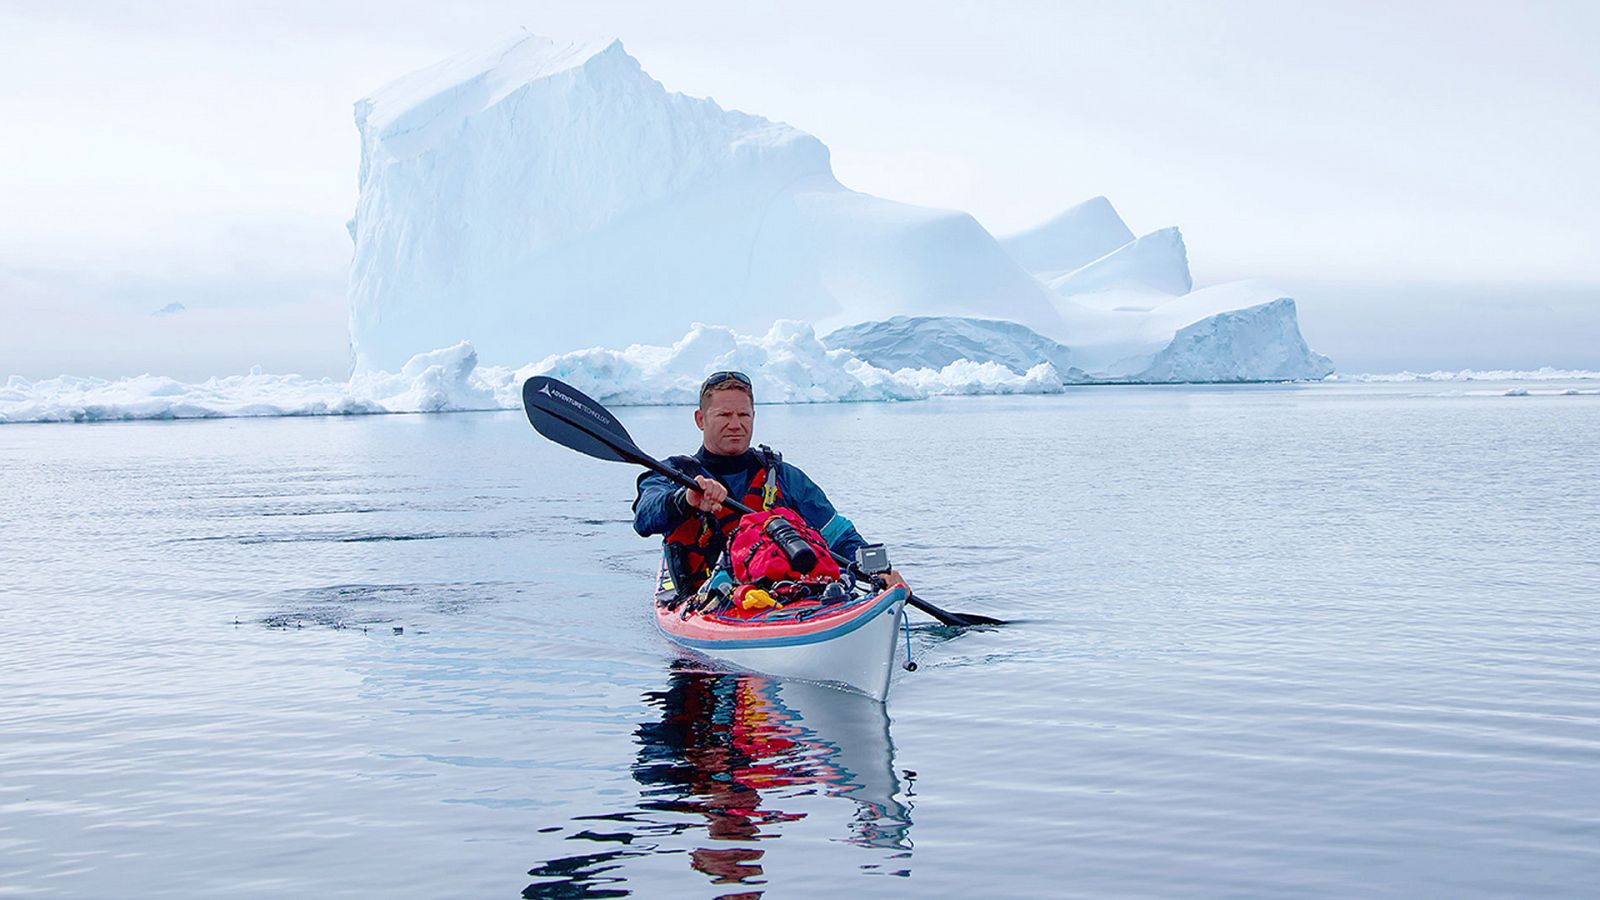 Expedición con Steve Backshall - Episodio 1: El Ártico, la frontera helada - Documental en RTVE